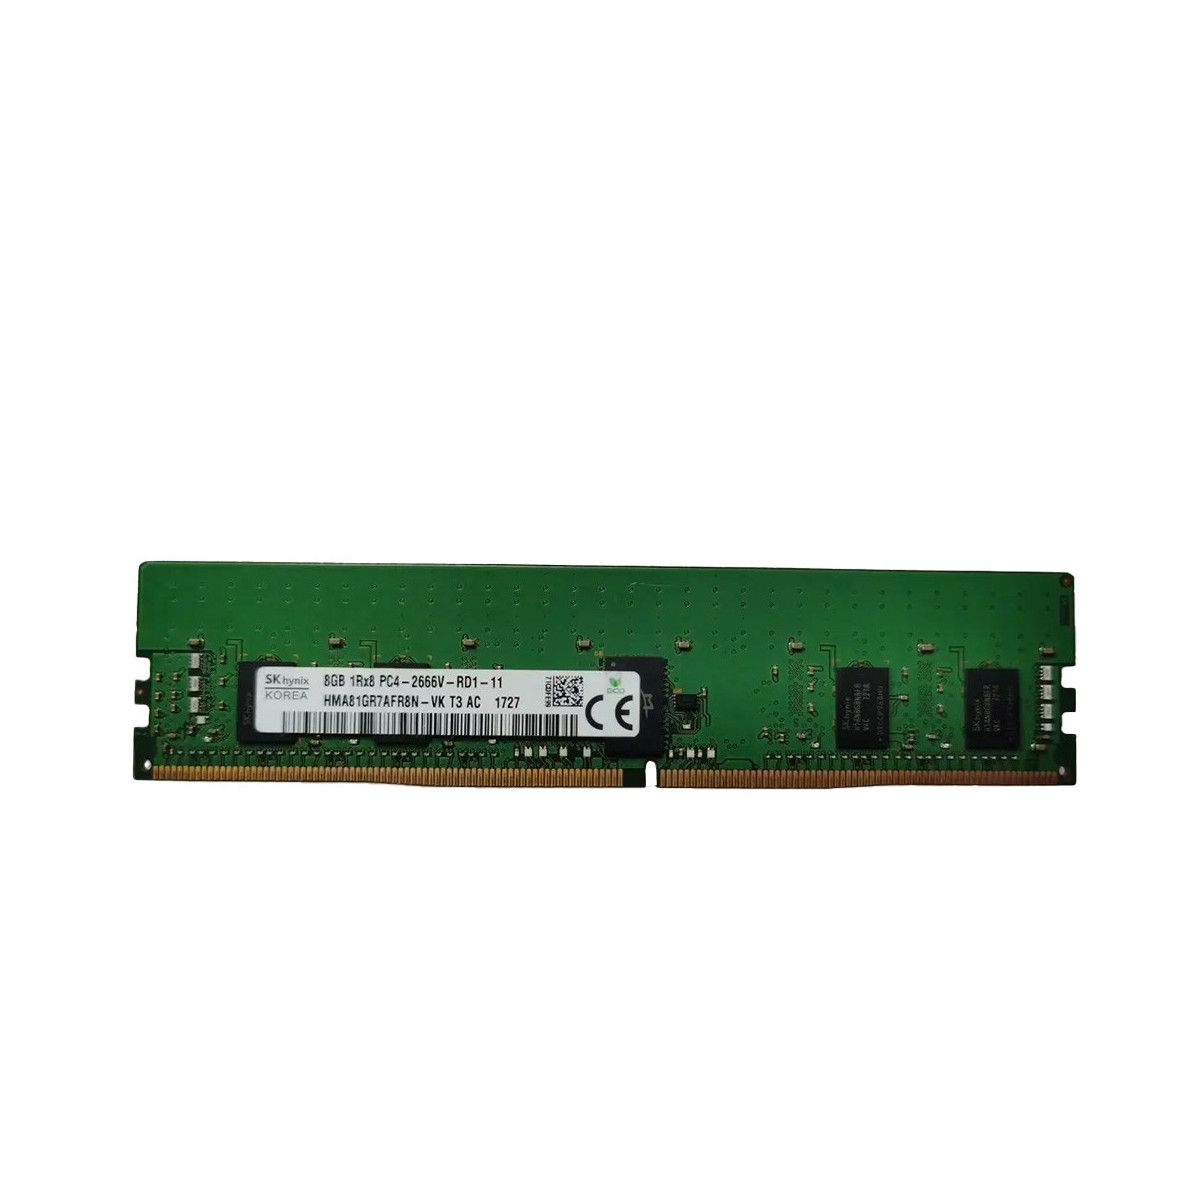 850879-001-MS - Memstar 1x 8GB DDR4-2666 RDIMM PC4-21300V-R - Mem-Star compatibel OEM geheugen 1 - Memstar 